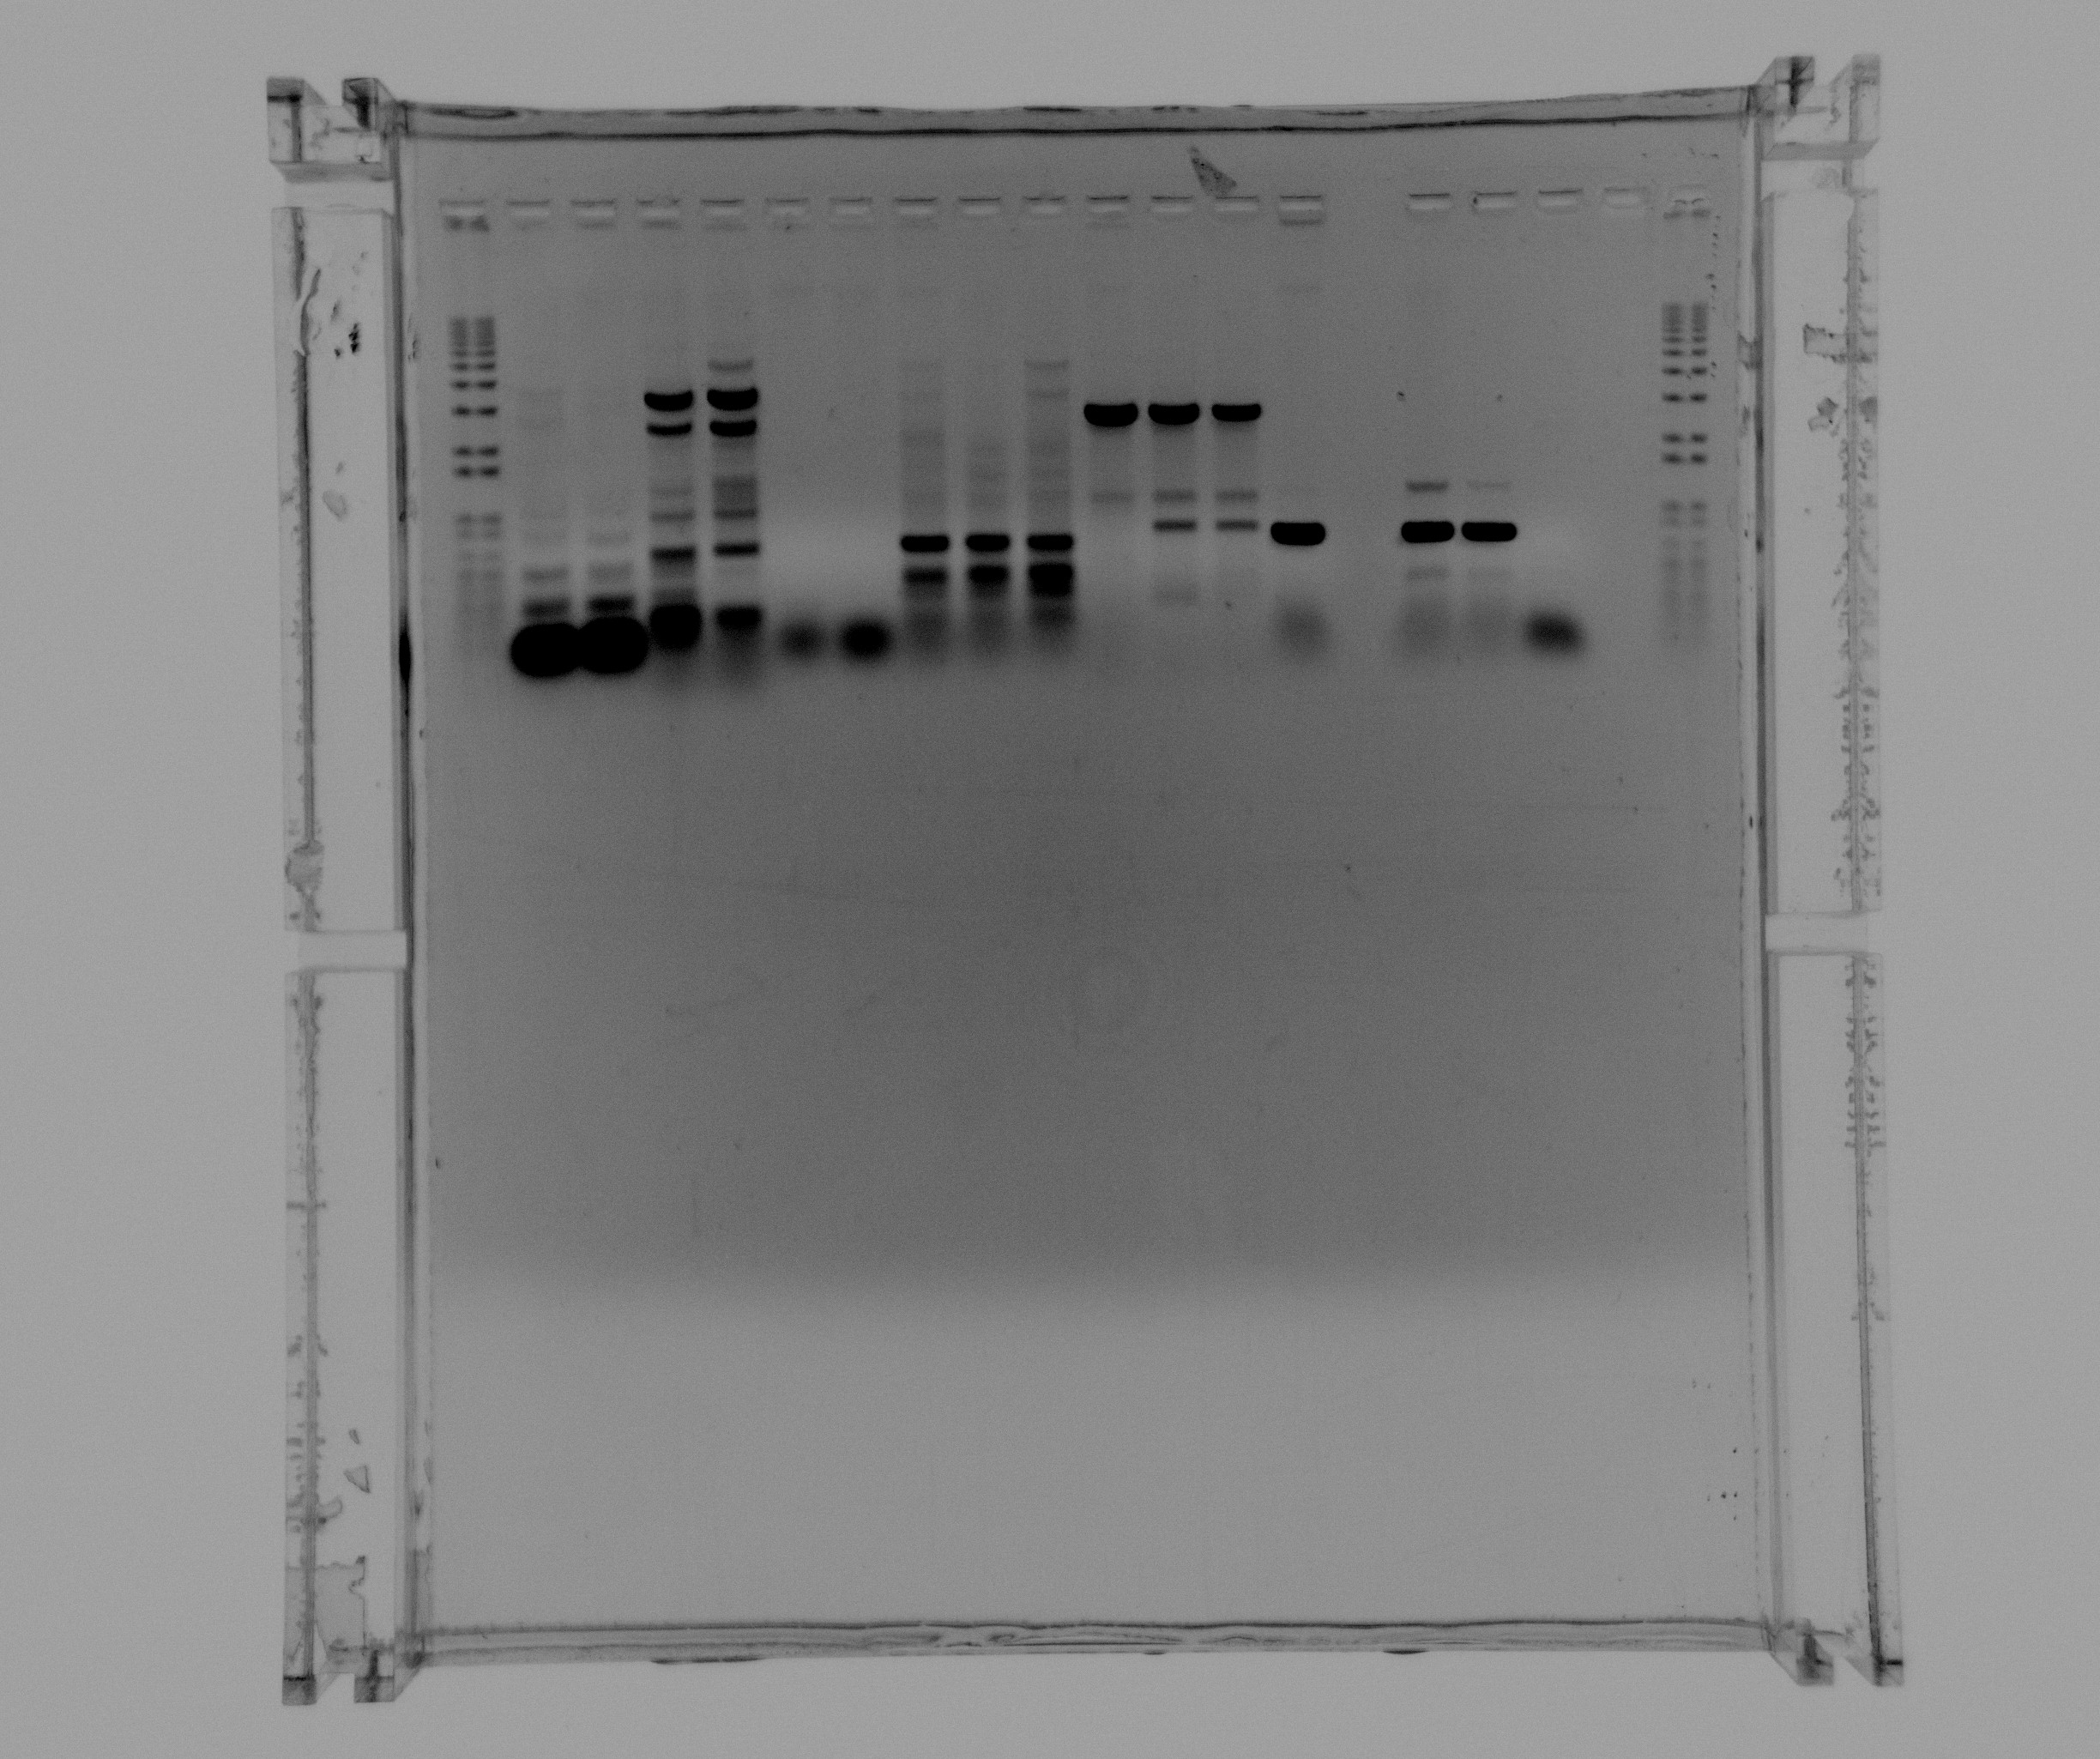 2013-08-02 Nir and Nir single genes.jpg